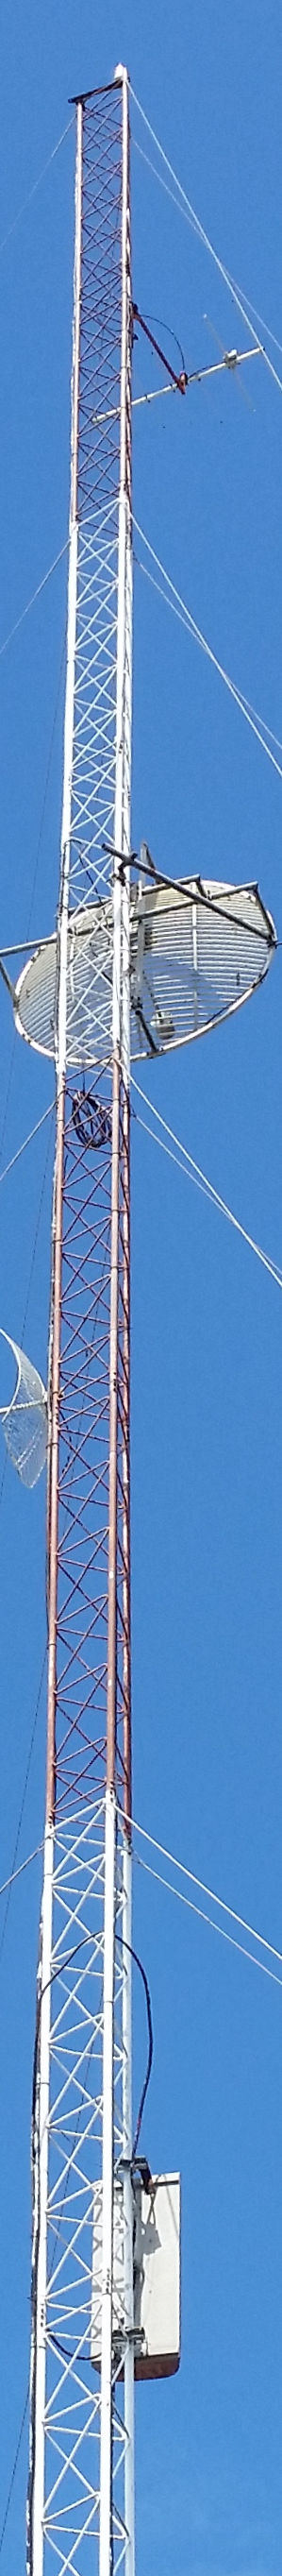 antena2